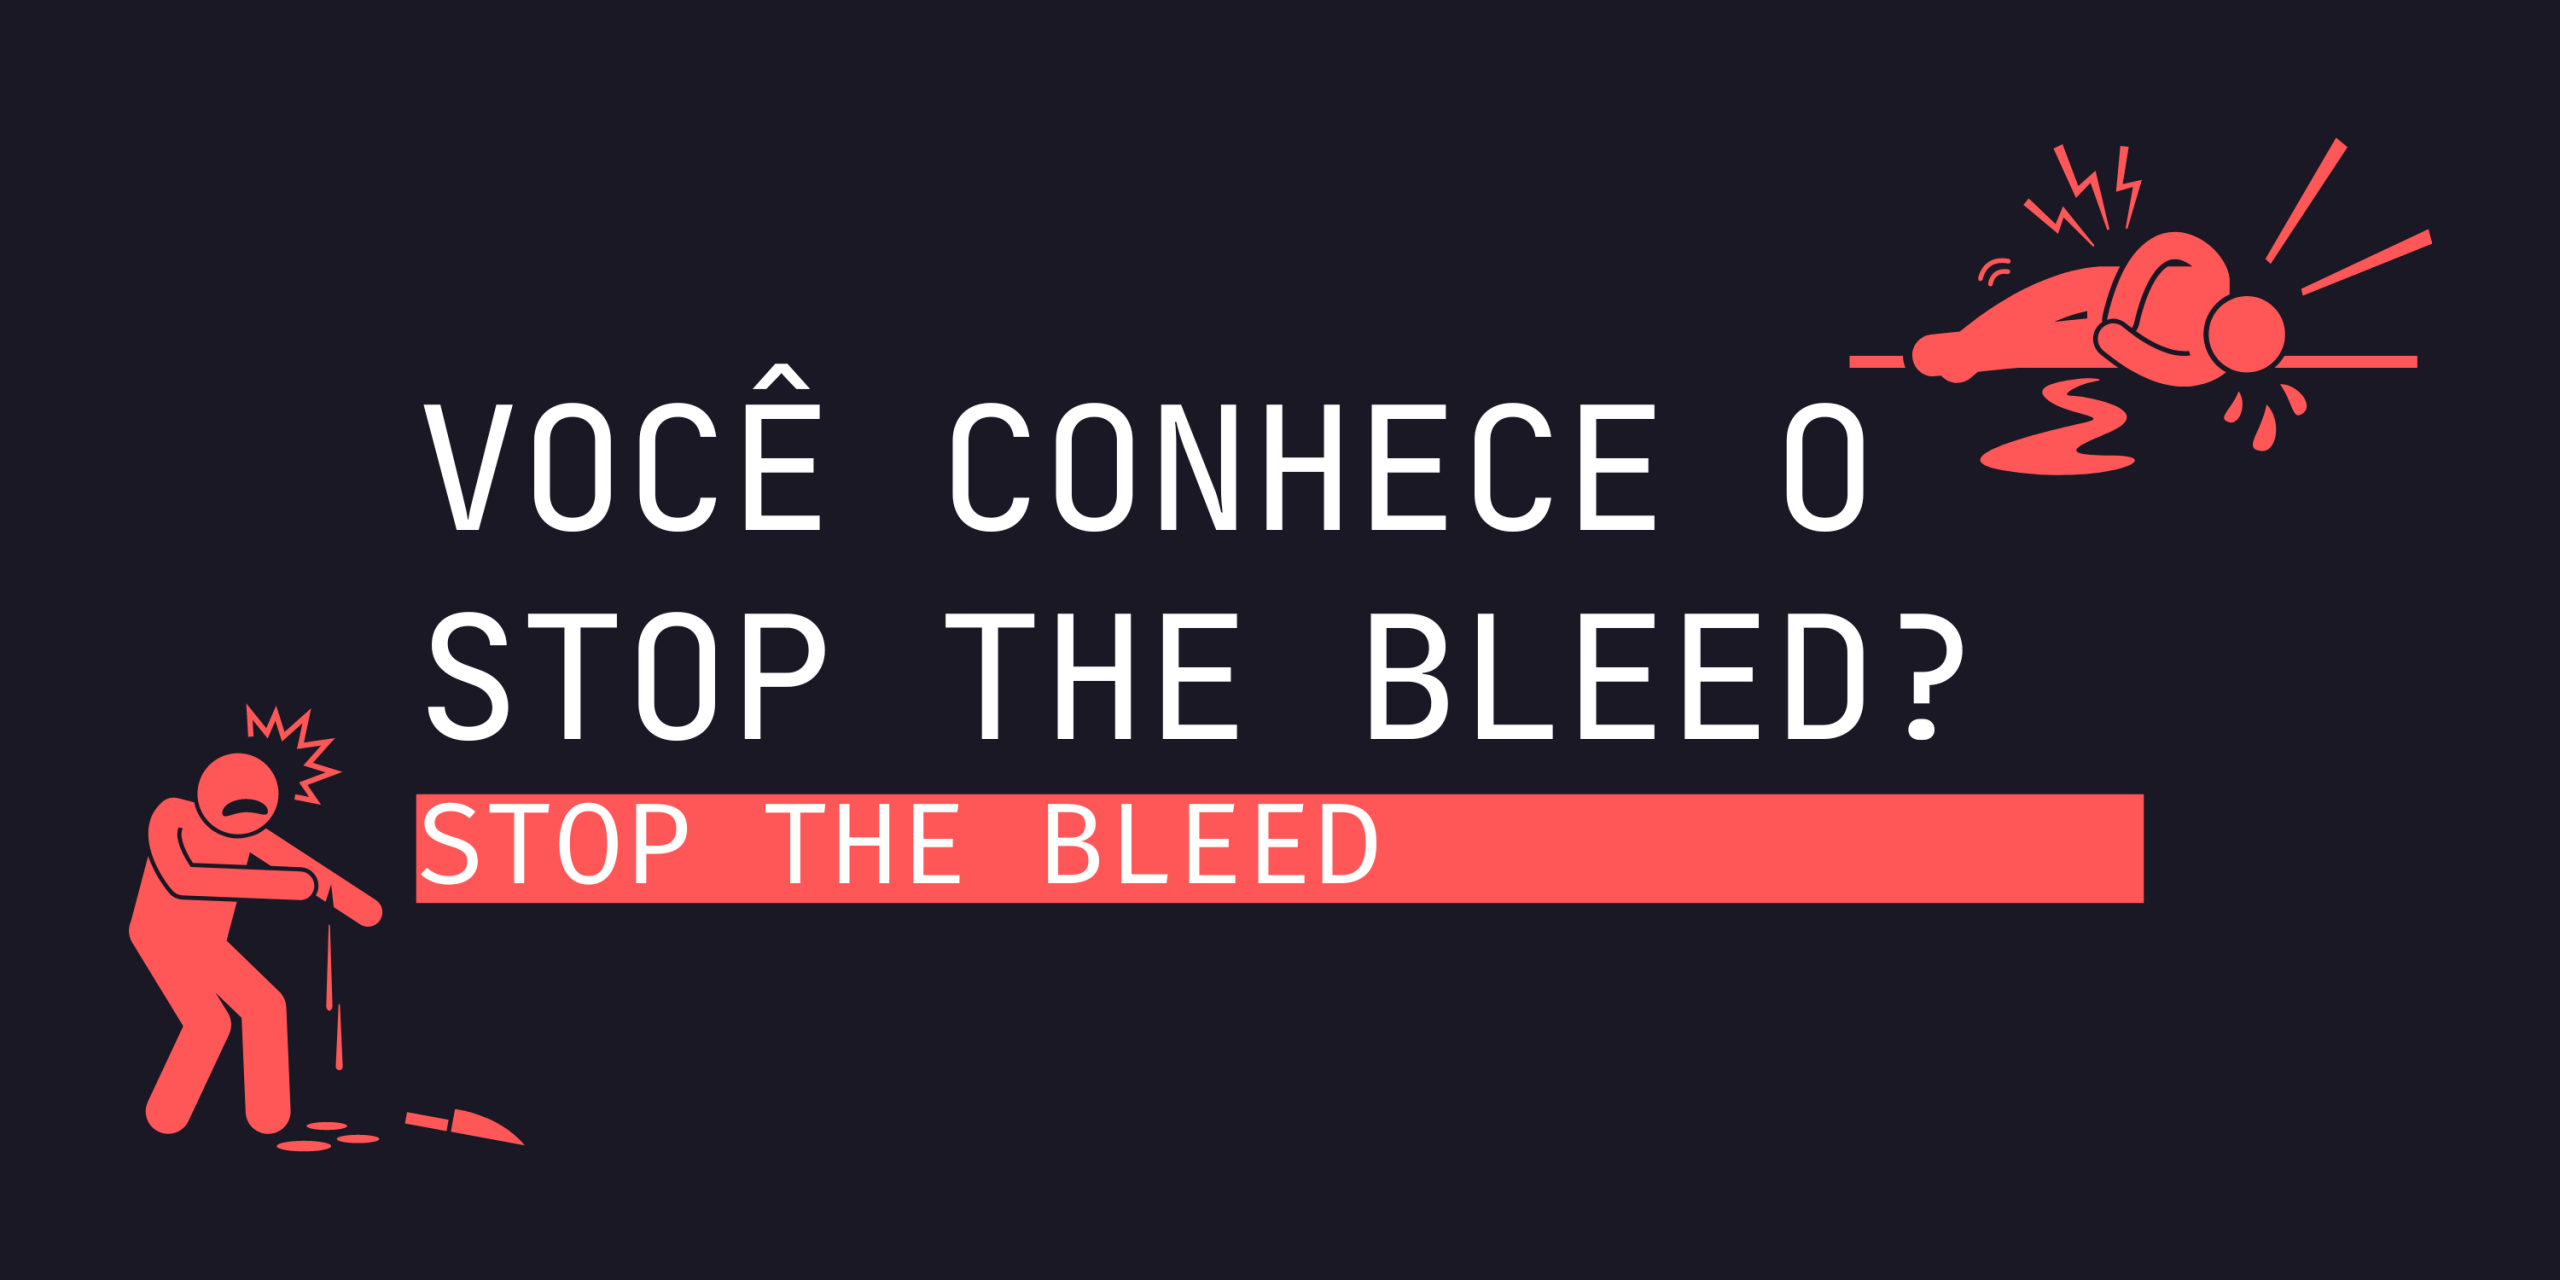 Você conhece o Stop the Bleed?